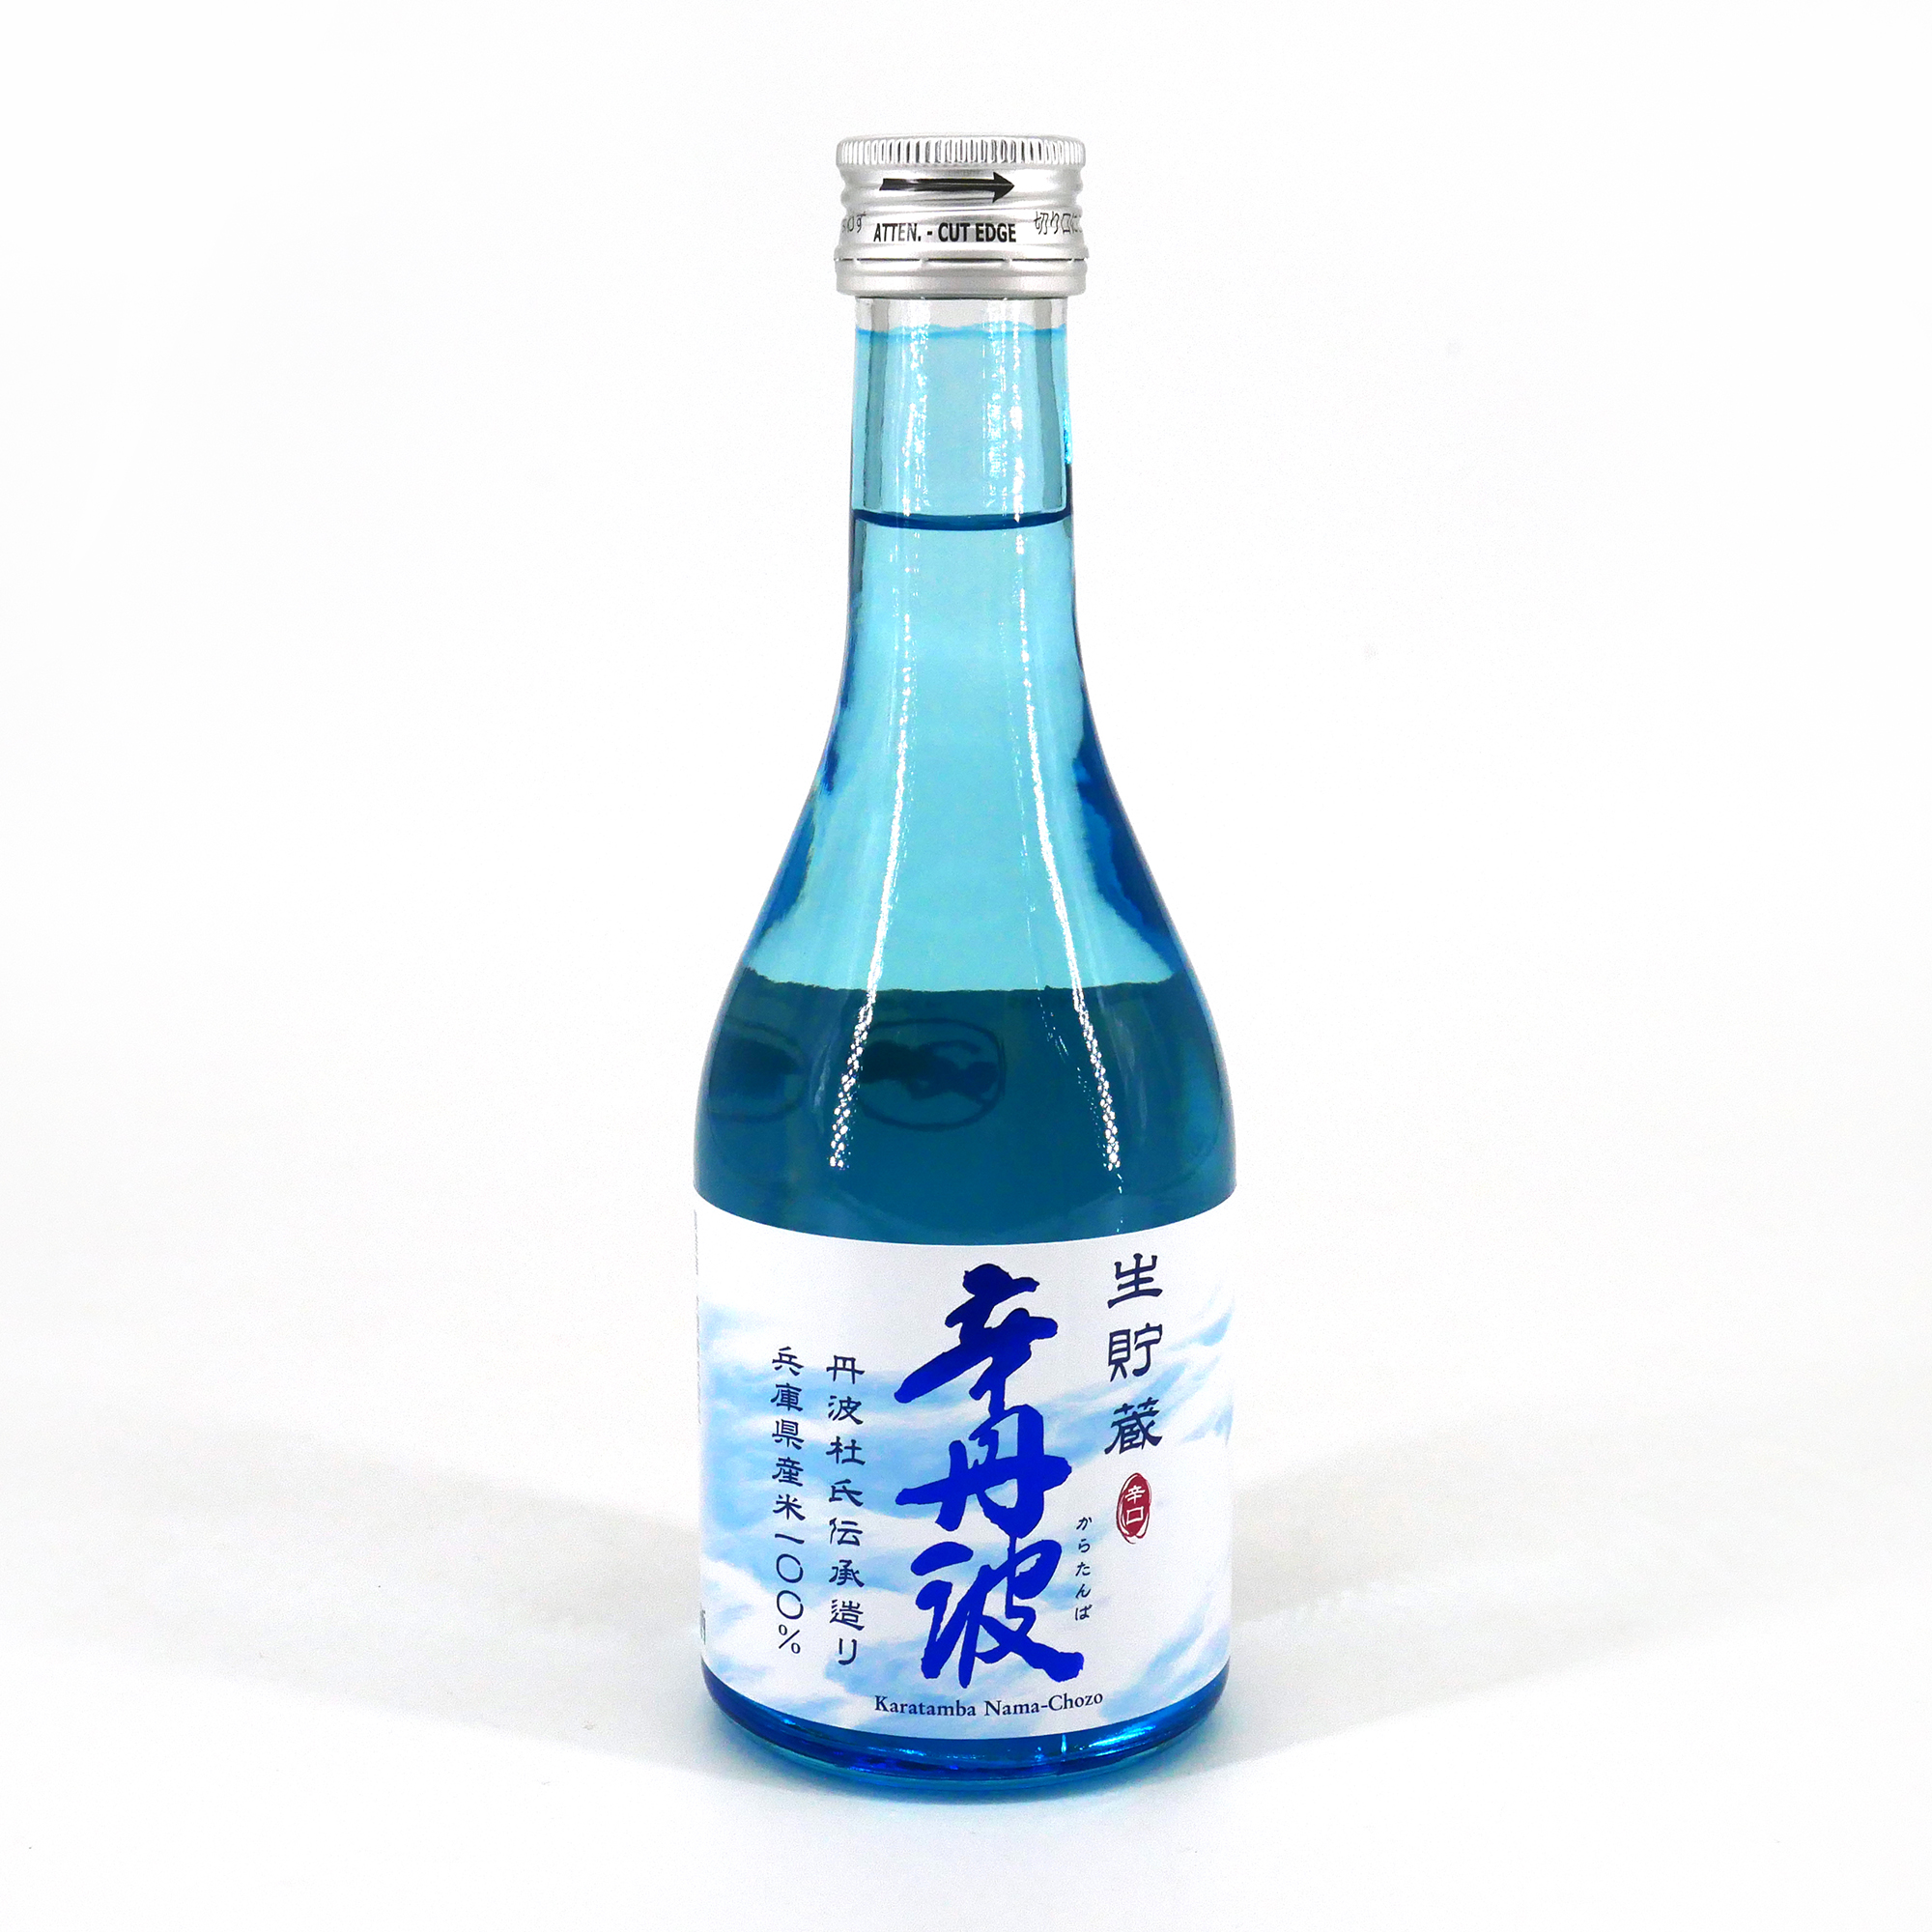 Sake giapponese YAMATO SHIZUKU alc 14.11% - 300ml